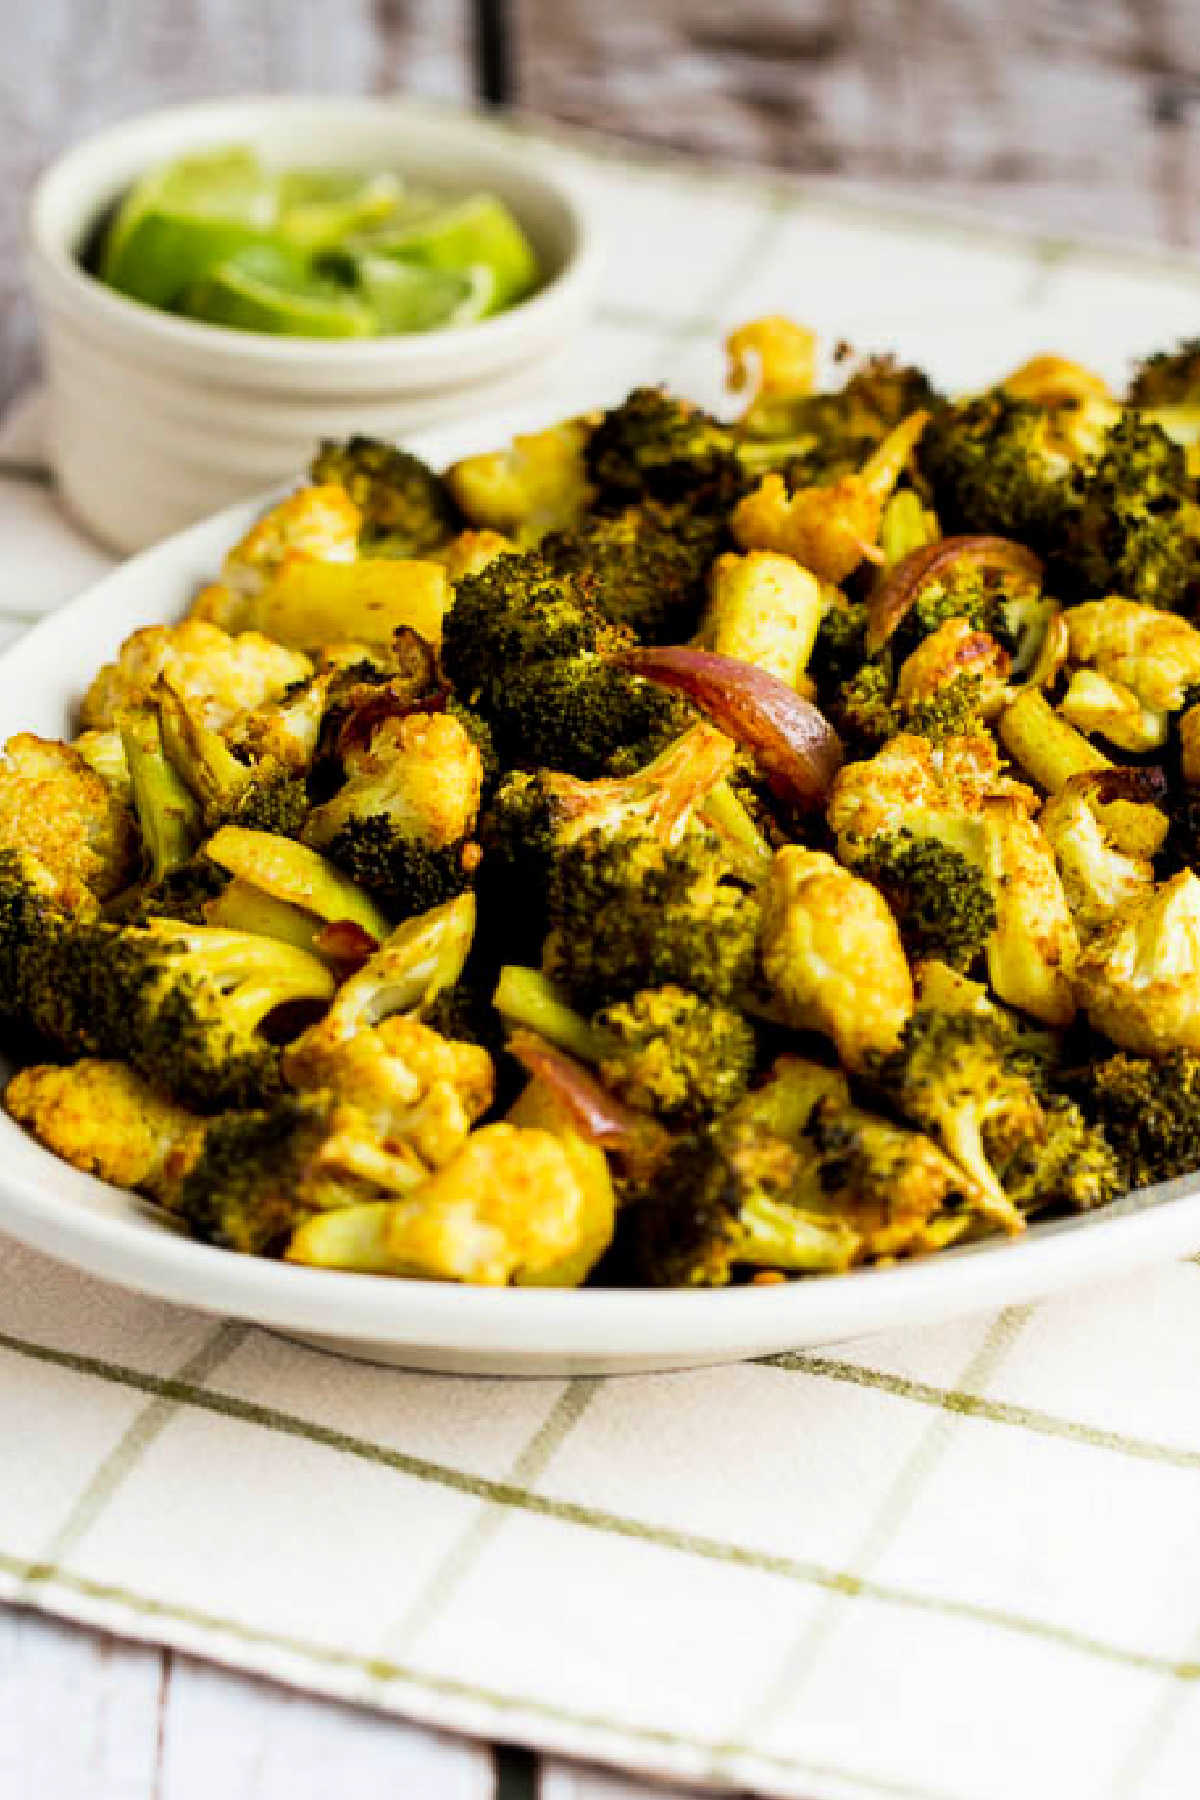 Broccoli e cavolfiori arrostiti mostrati sul piatto da portata 